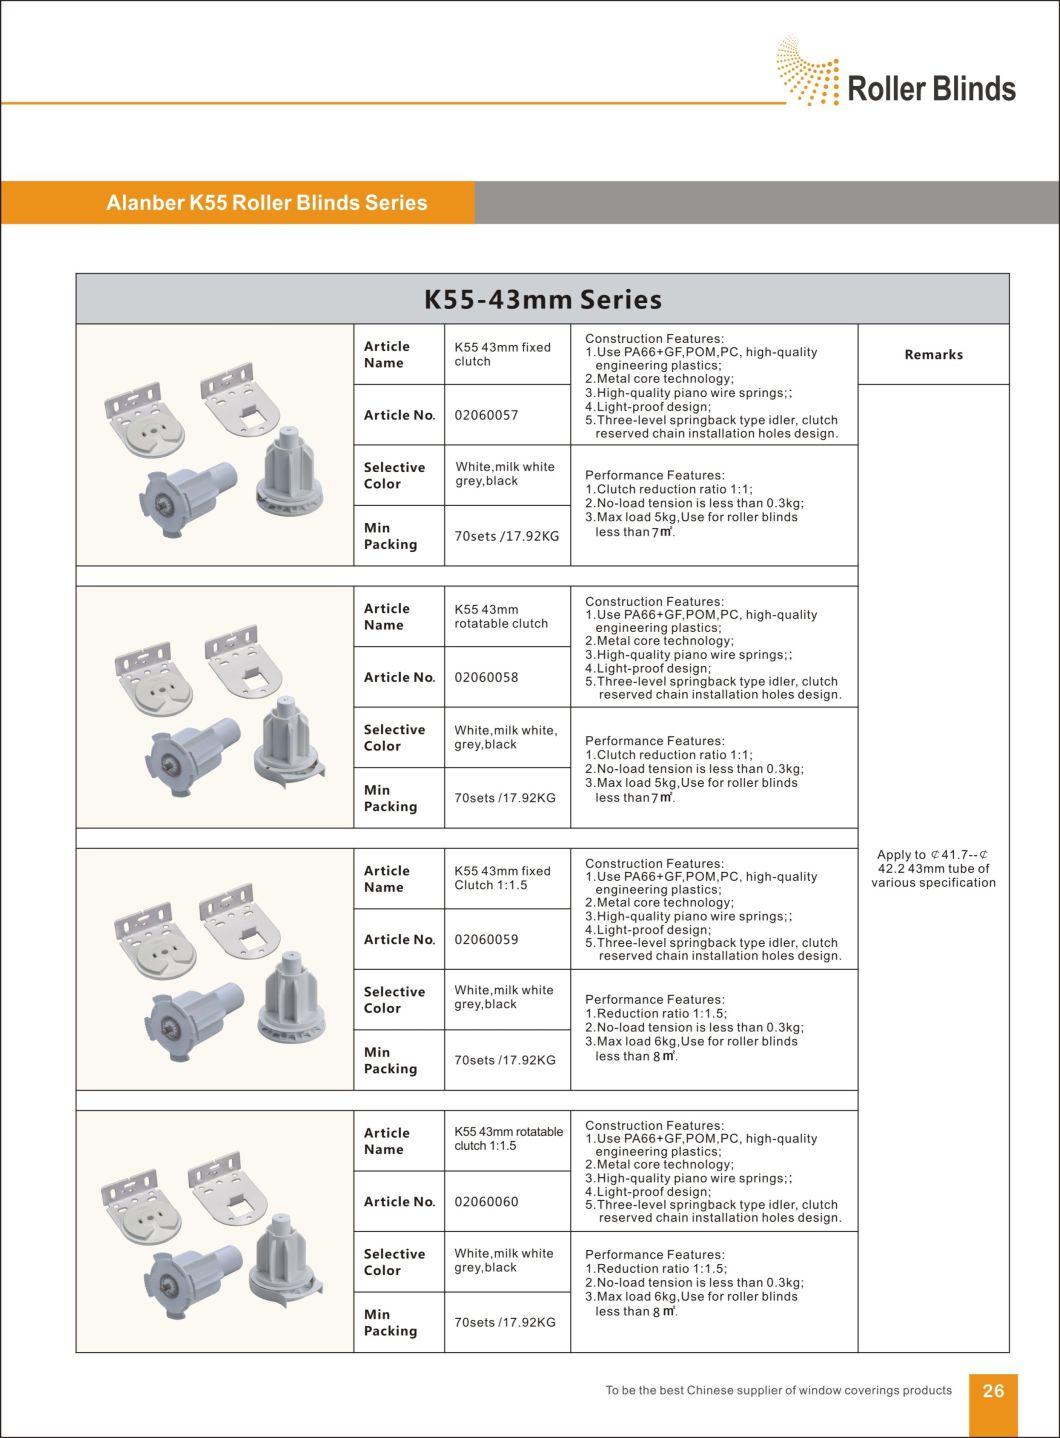 K55-43mm Fixed Deceleration Clutch Roller Blinds Components, for Roller Blinds